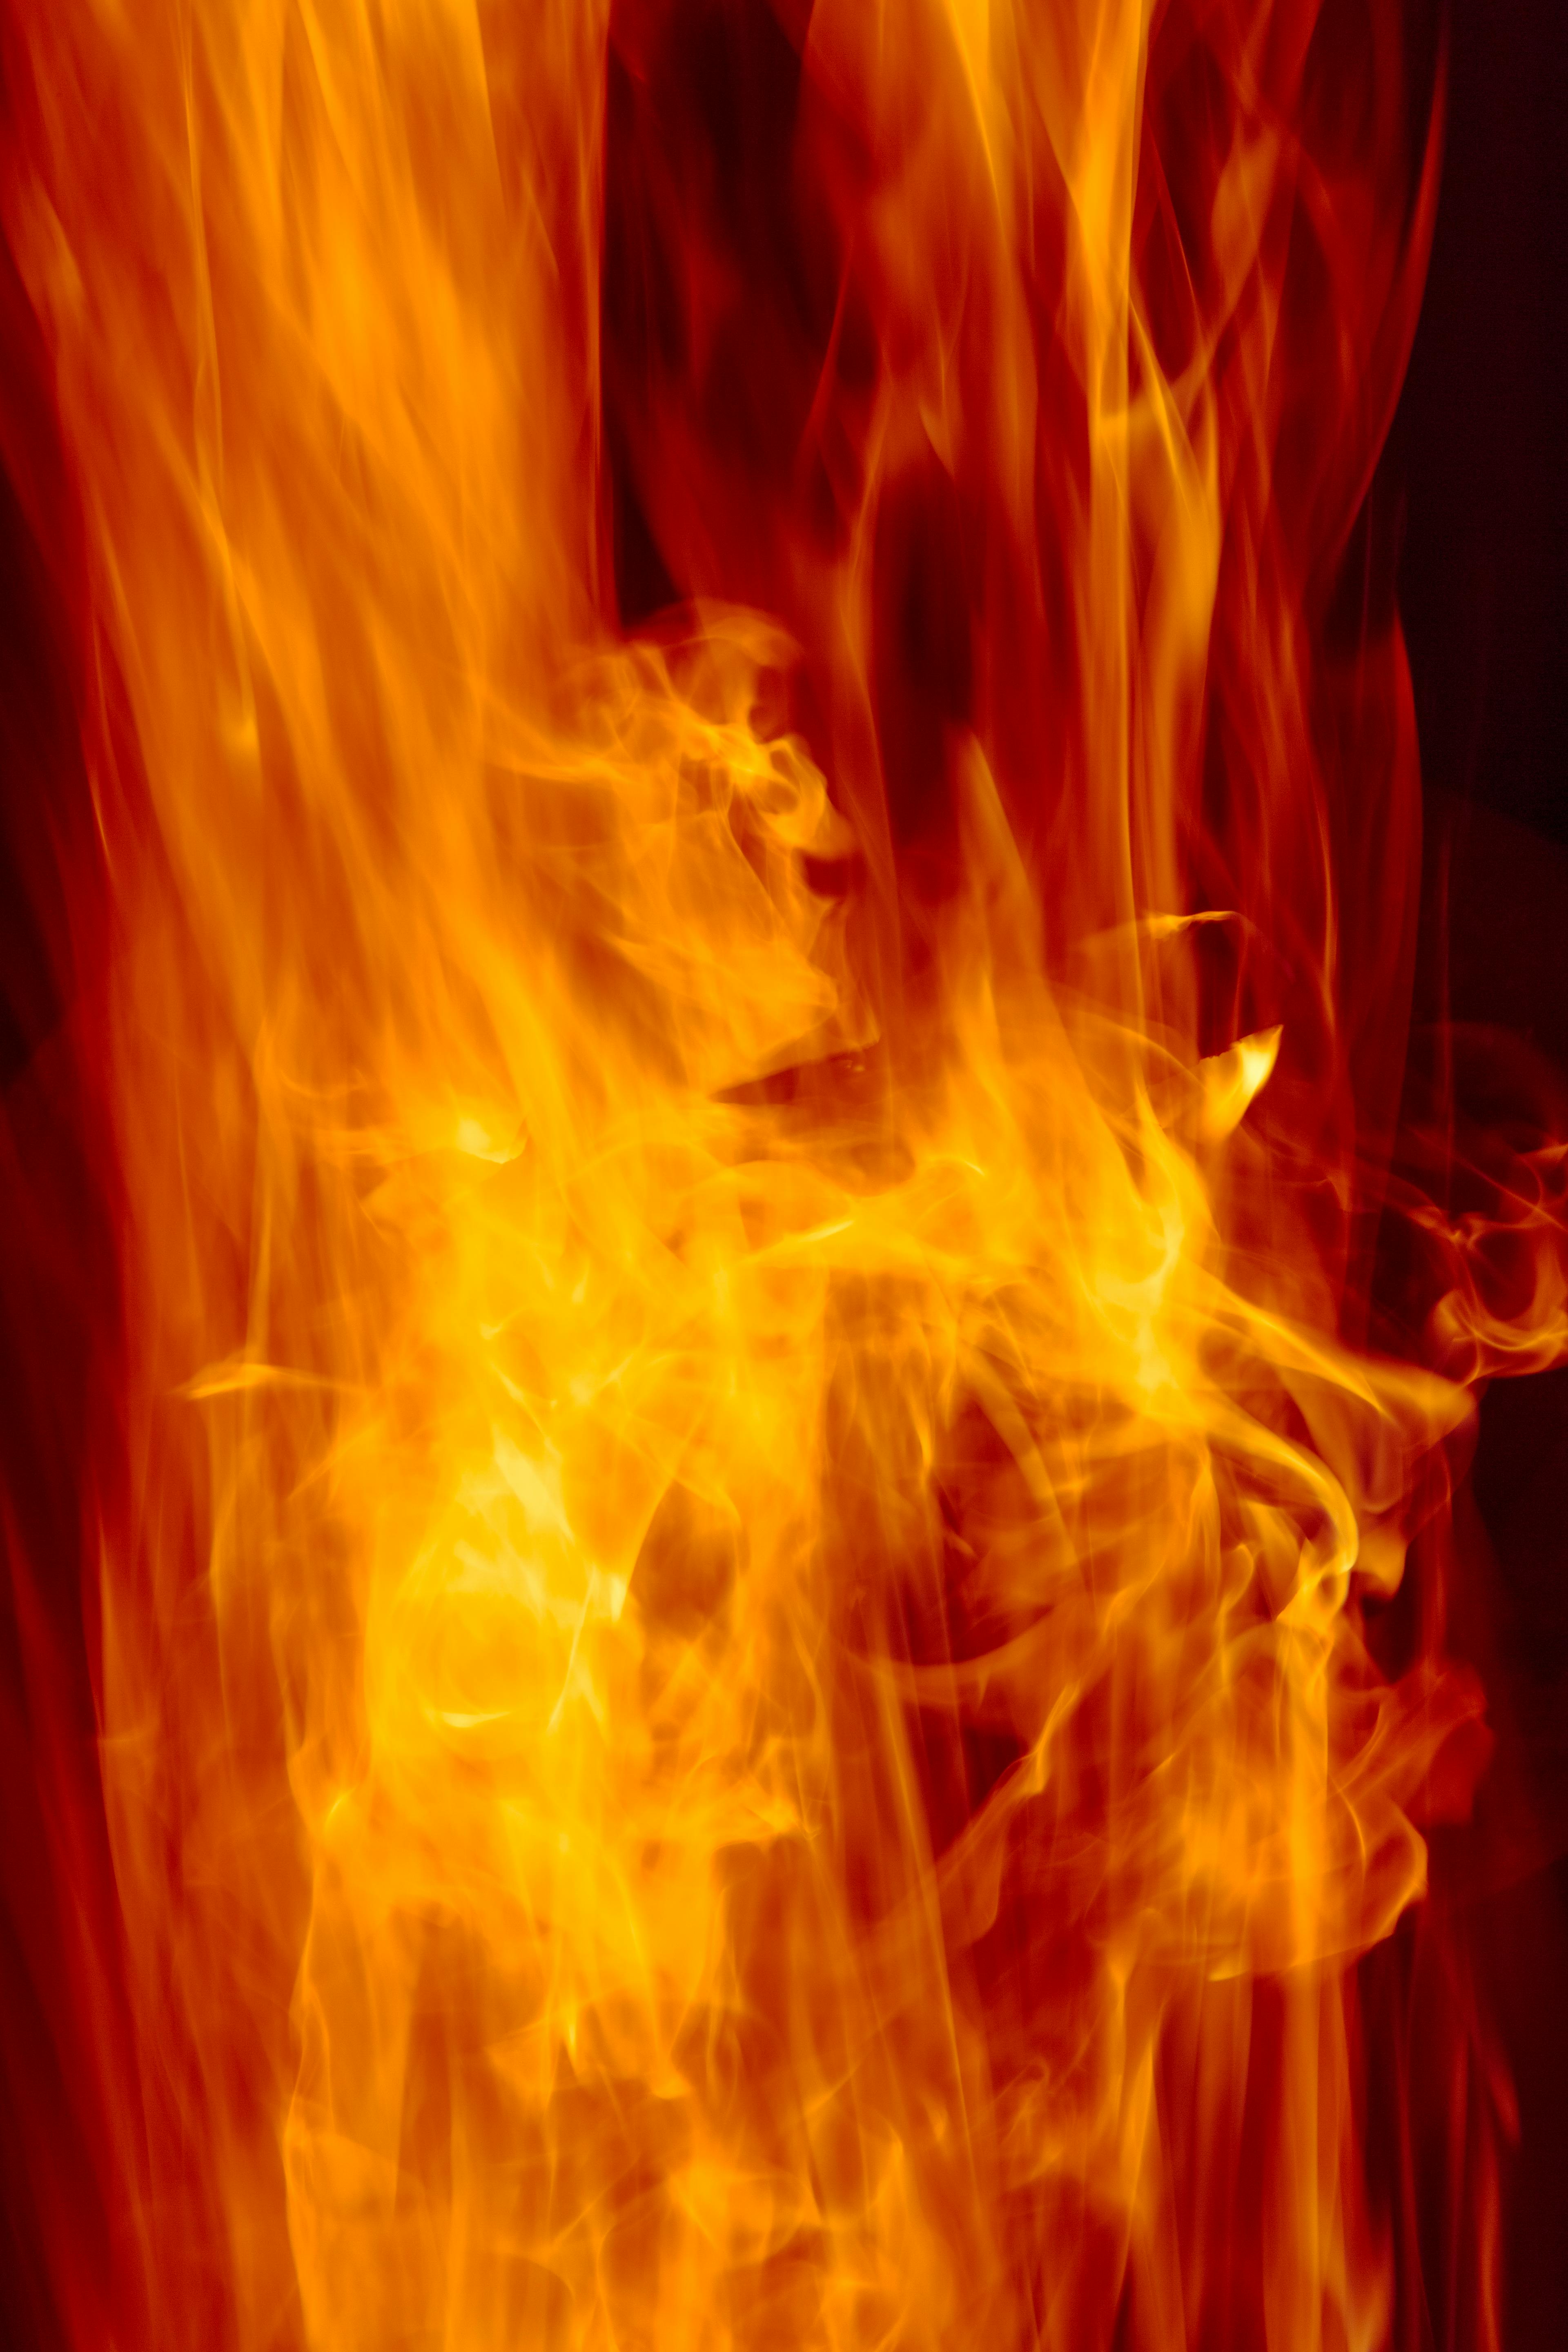 Hình nền lửa đẹp nhất sẽ đem lại cho bạn cảm giác ấn tượng với hiệu ứng lửa sôi động và sống động. Những hình ảnh này đầy uy lực và kiêu hãnh, làm nổi bật màn hình của điện thoại hoặc máy tính. Nếu bạn yêu thích những hiệu ứng lửa đẹp, hãy xem hình ảnh liên quan.